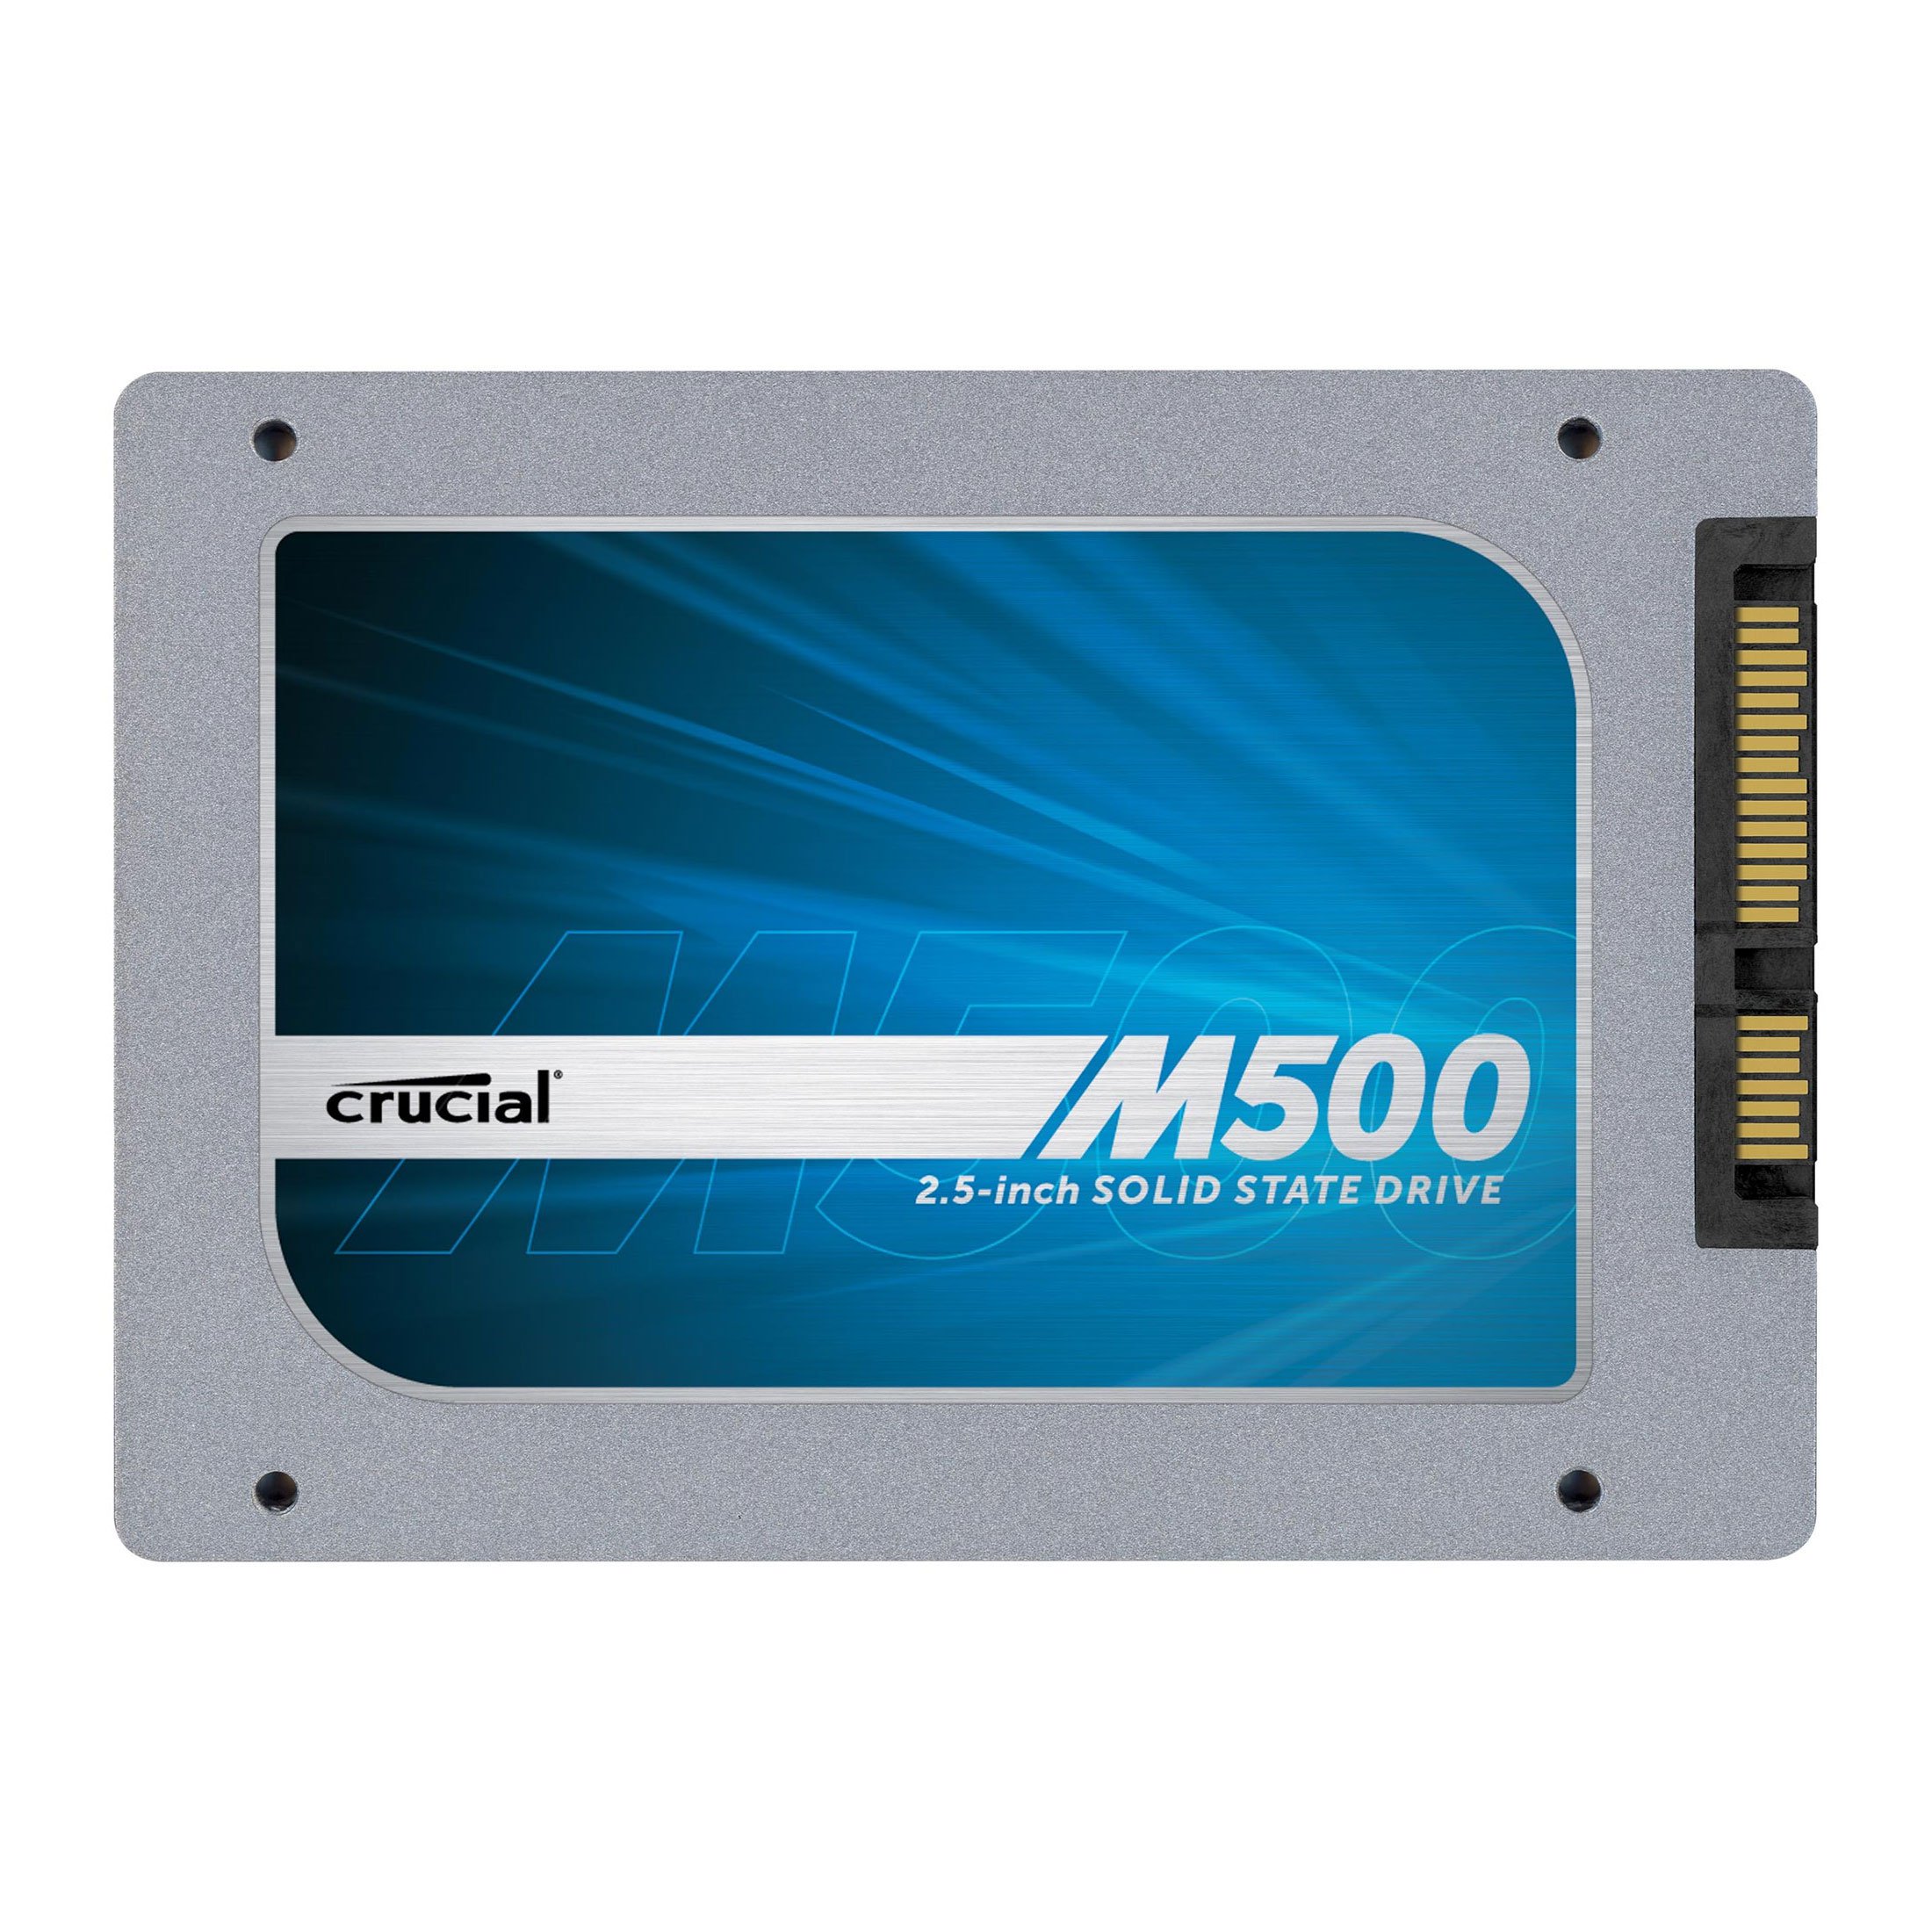 satıldı Crucial M500 240GB SSD  /// corsair 120gb